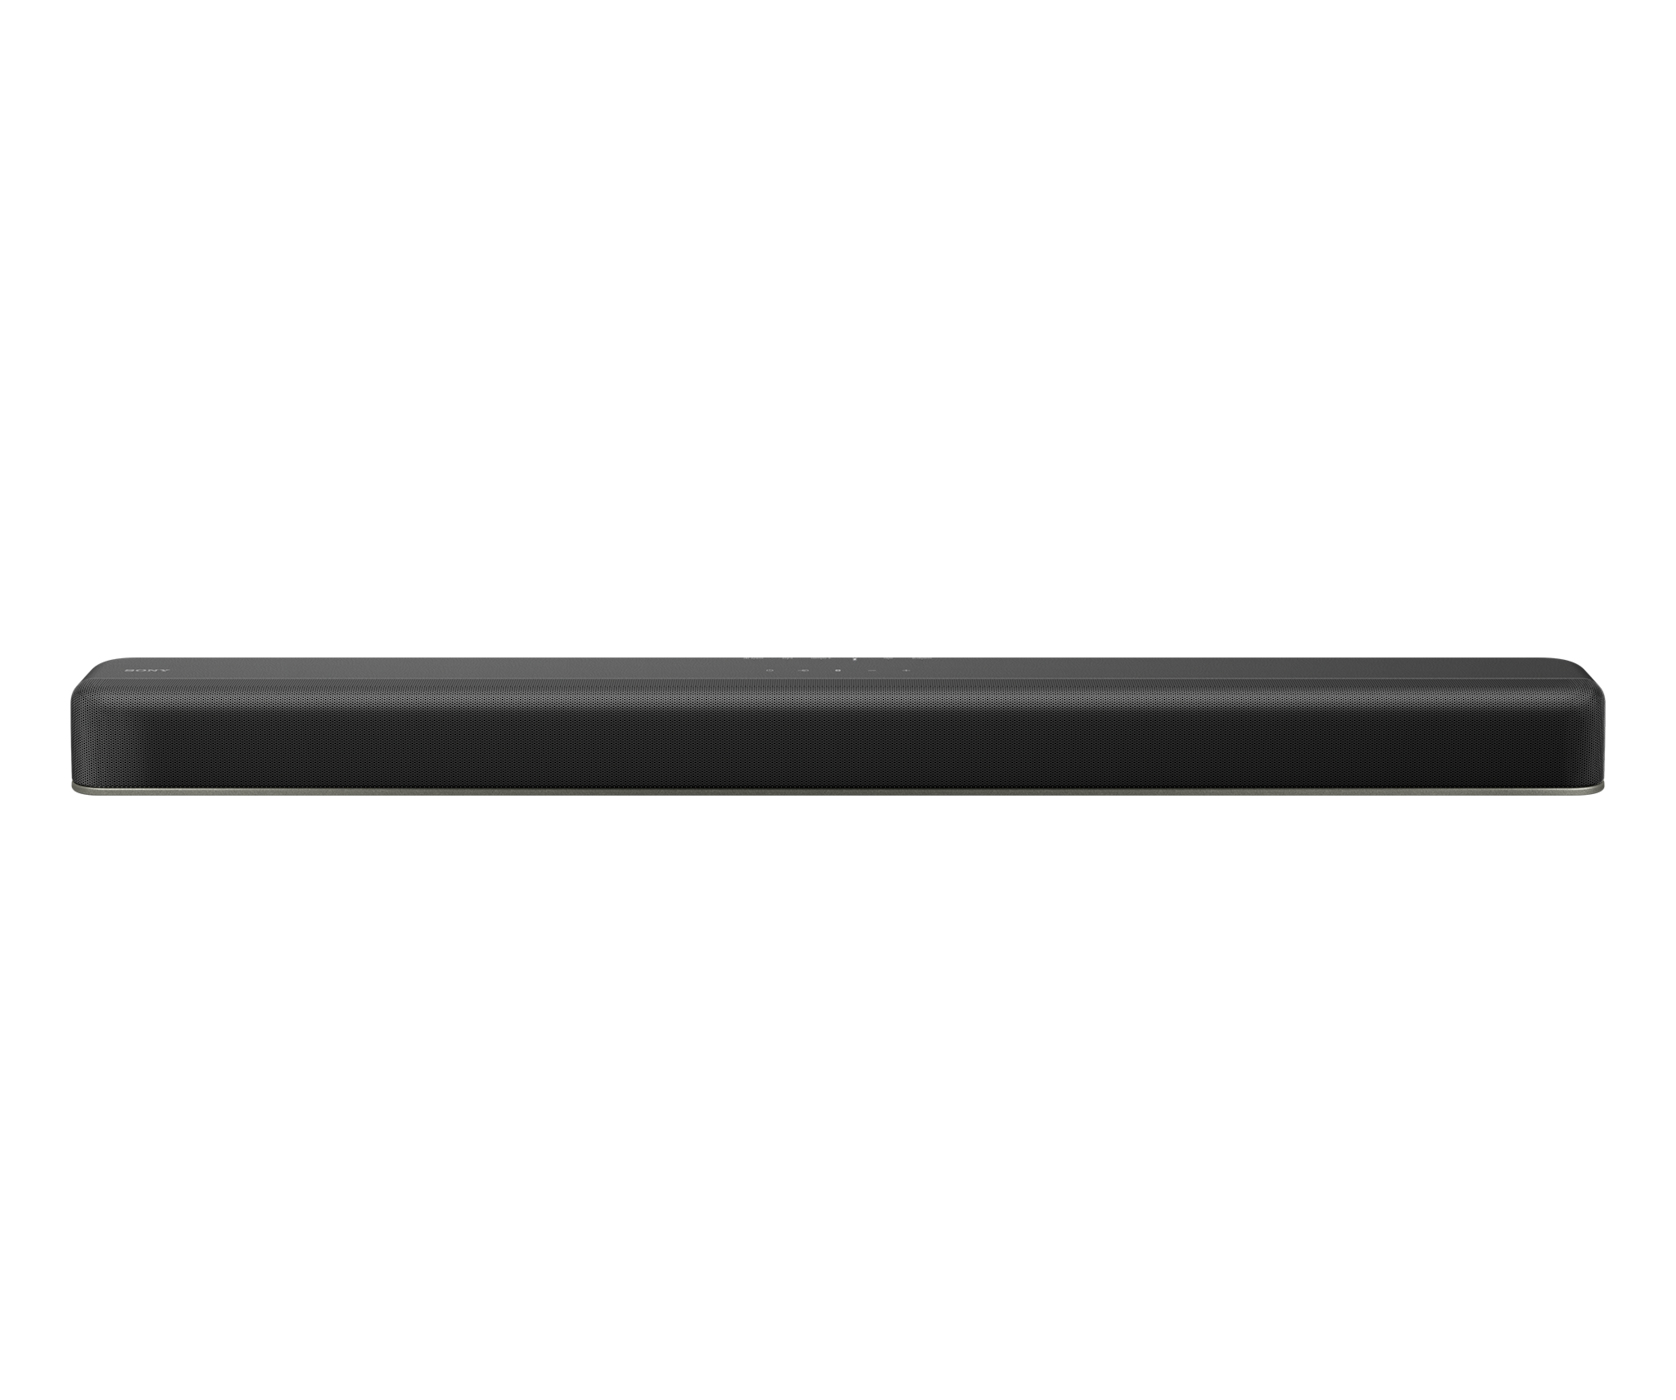 Sony HTX8500 soundbar speaker Black 2.1 channels 128 W